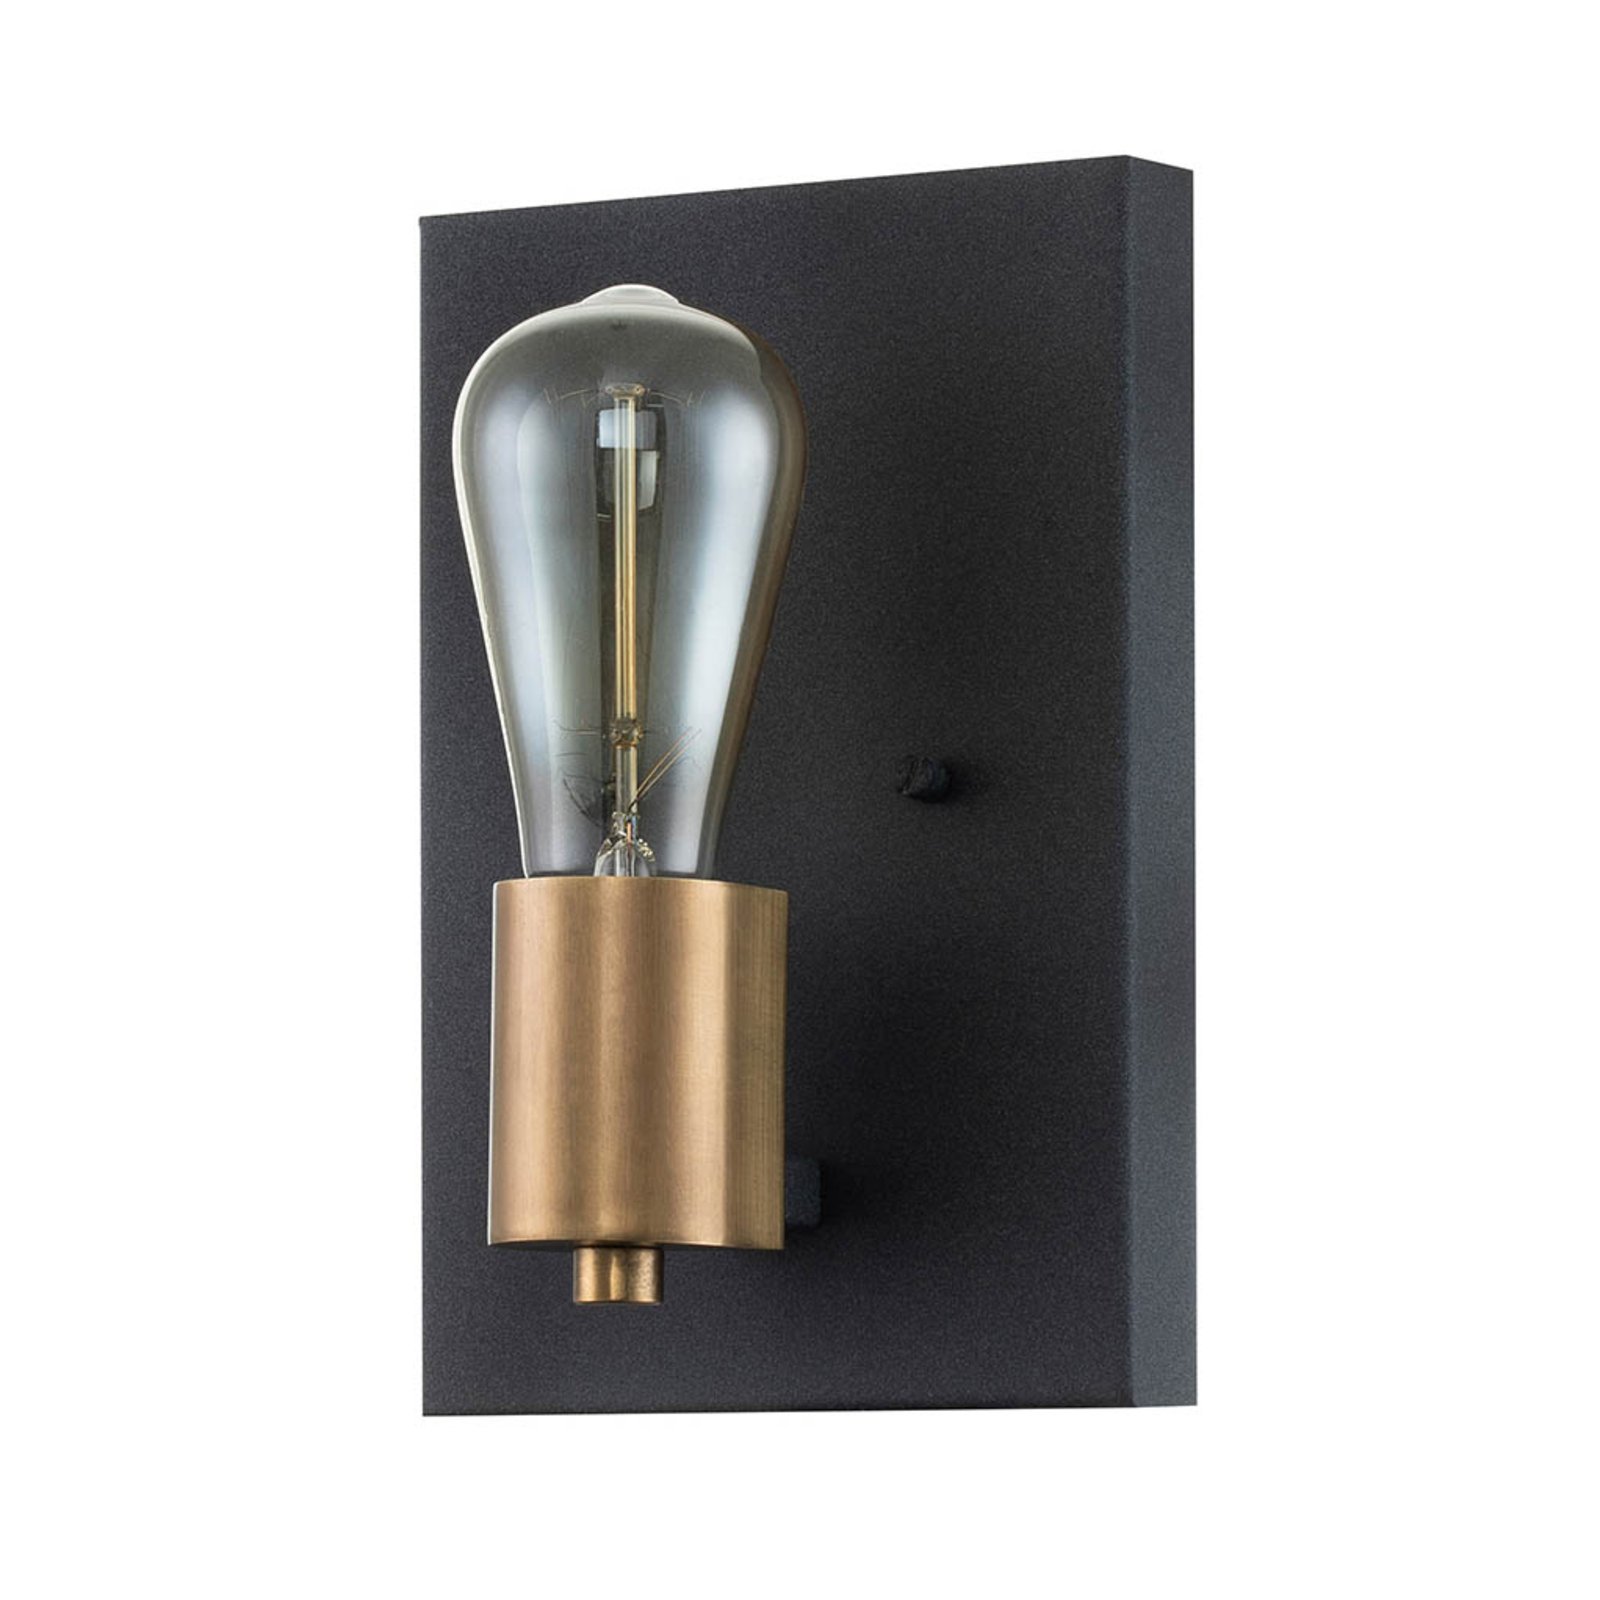 Silas zidna svjetiljka, crna, jedna žarulja, 15x22,5 cm